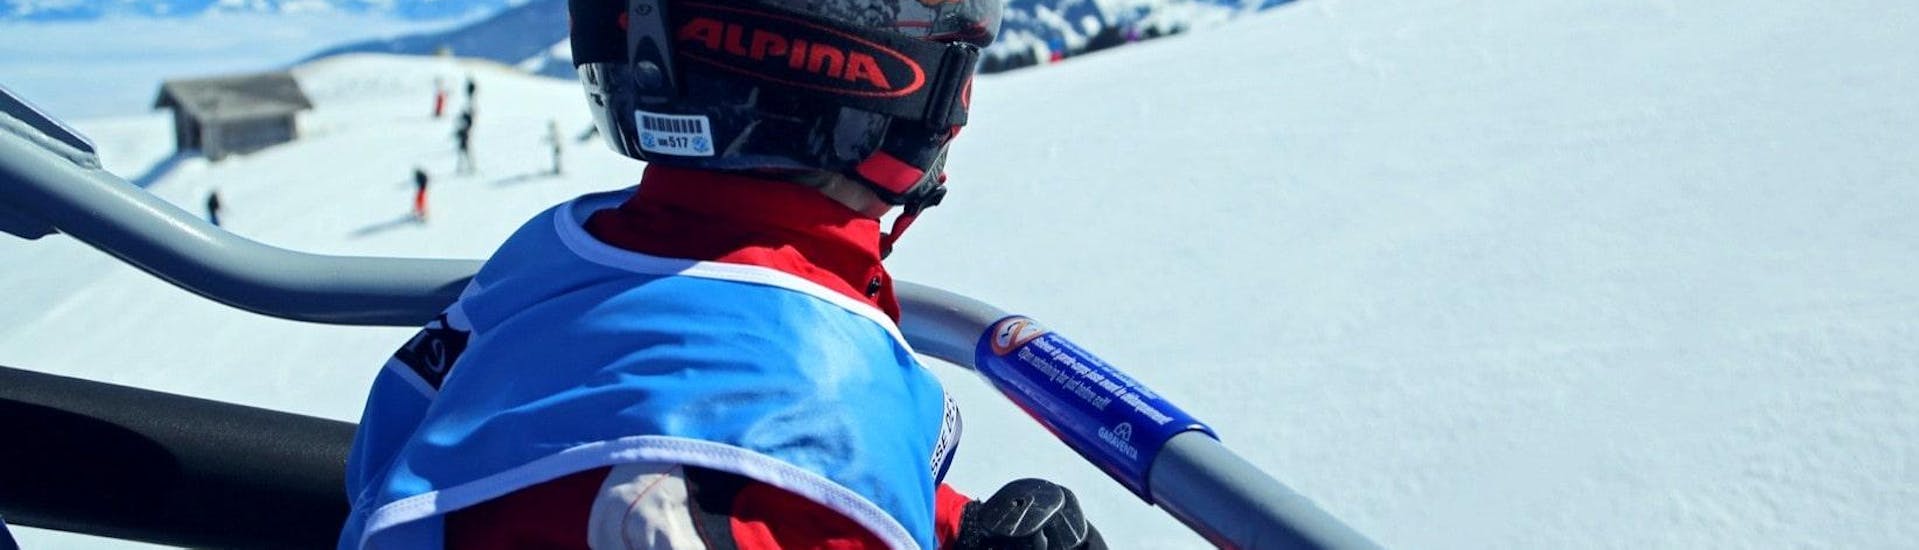 Ein junges Kind fährt mit dem Sessellift hinauf zum Start des Kurses 'Privater Kinder Skikurs - Alle Levels' der Schweizer Skischule Crosets-Champoussin.